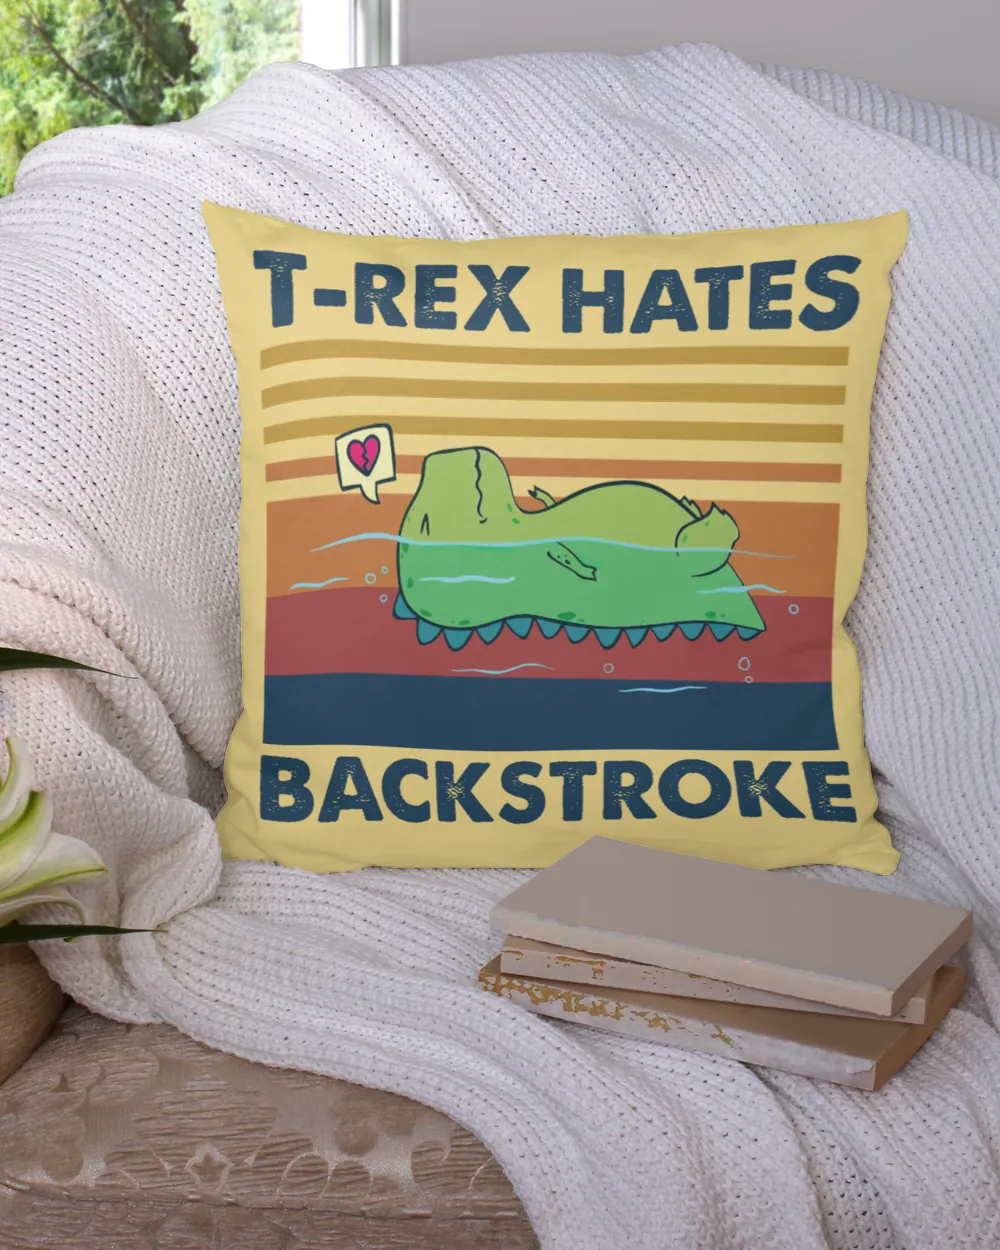 T-rex hates backstroke